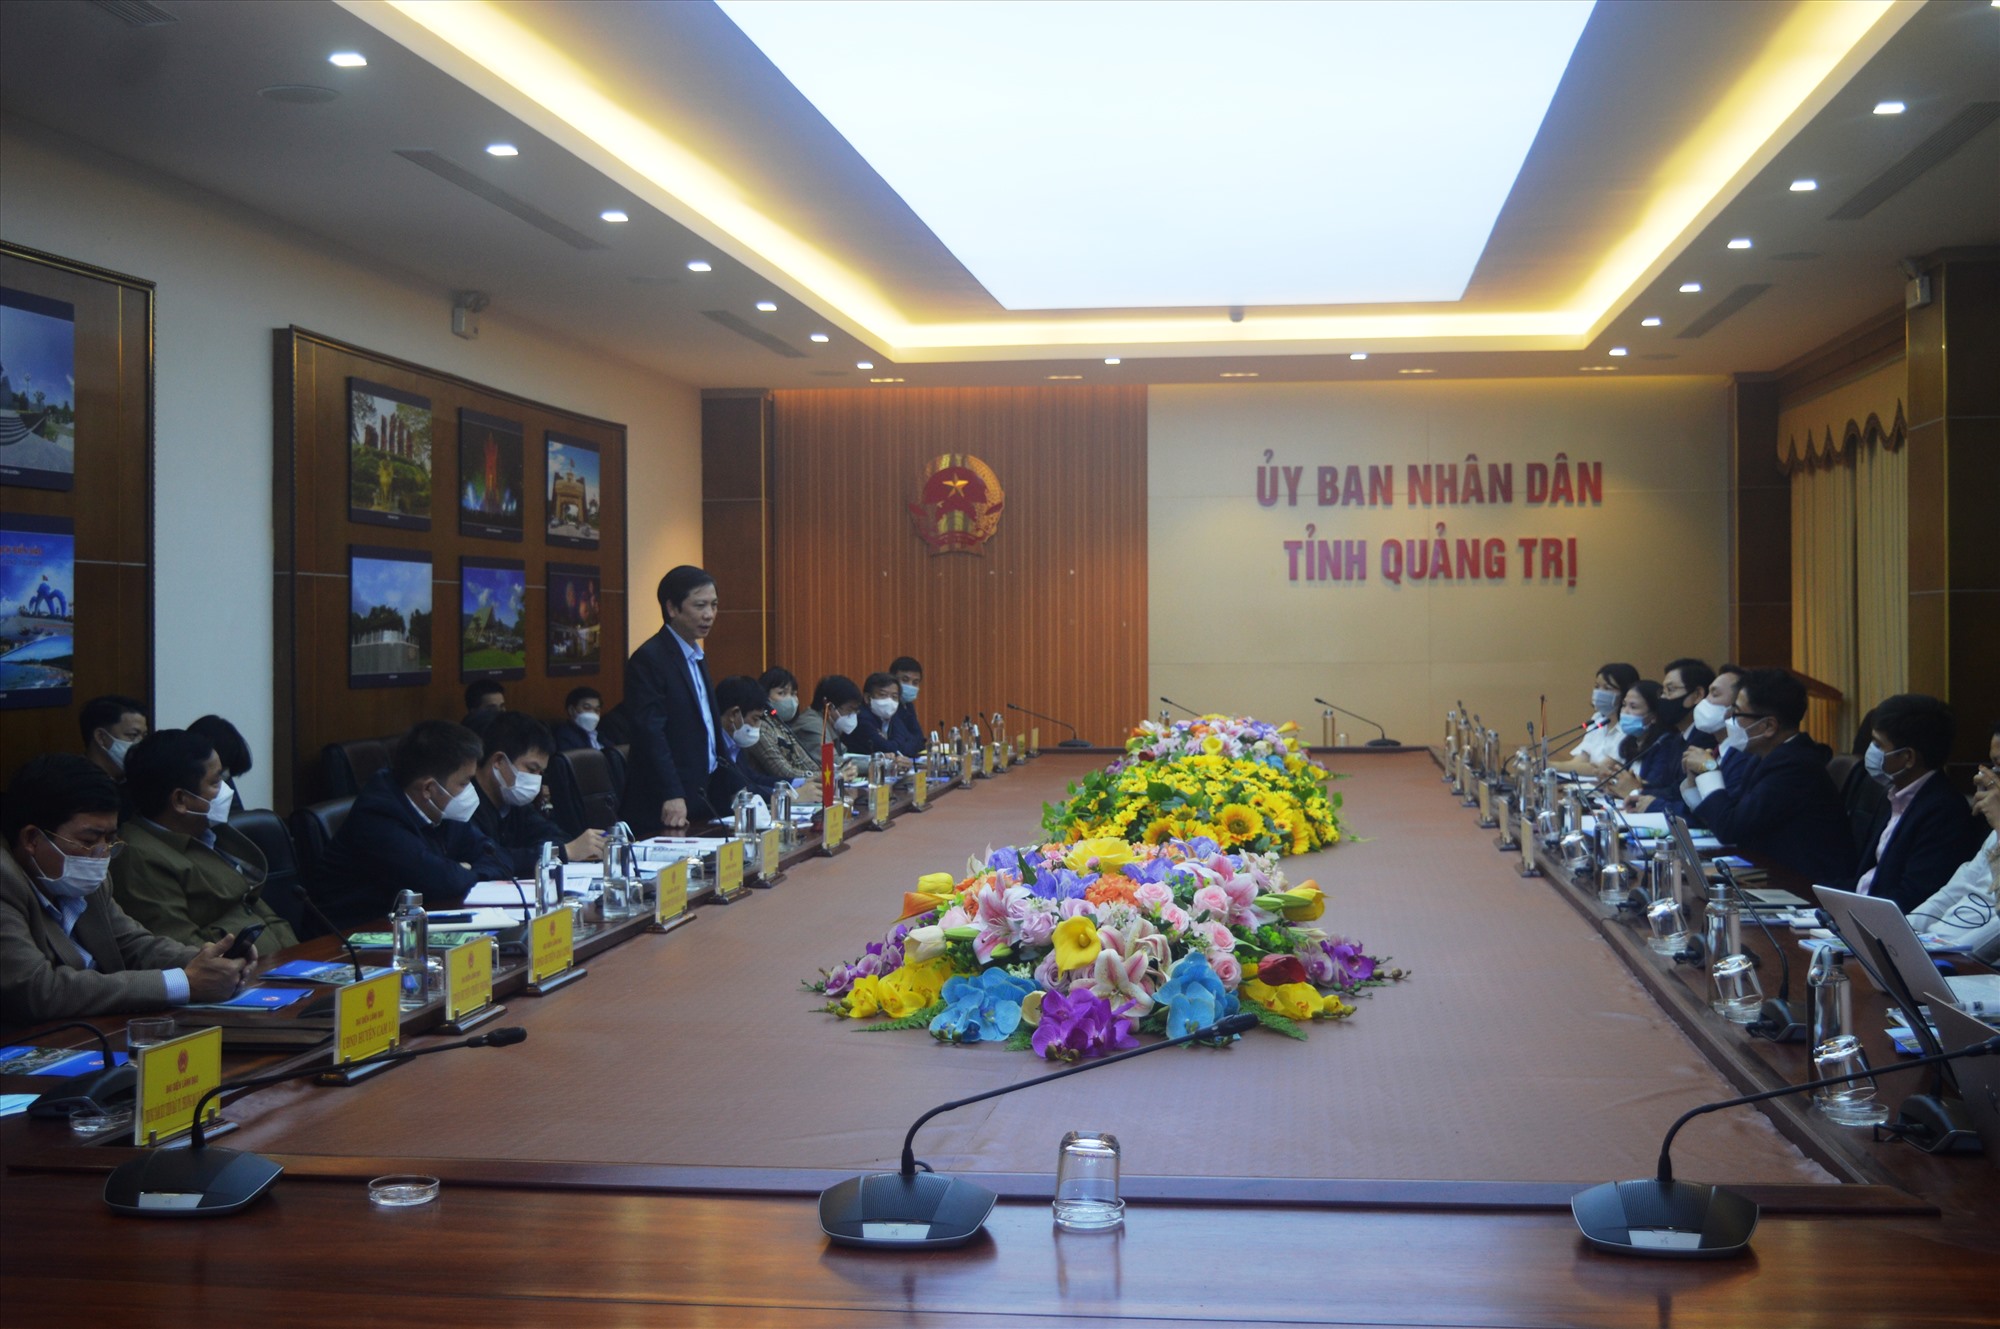 Phó Chủ tịch UBND tỉnh Hoàng Nam giao các sở, ngành phối hợp UBND huyện Cam Lộ kết nối, hỗ trợ giải quyết tất cả các thủ tục liên quan để hiện thực hóa 2 dự án mà Tổng công ty Kotra Việt - Hàn đề xuất - Ảnh: L.T